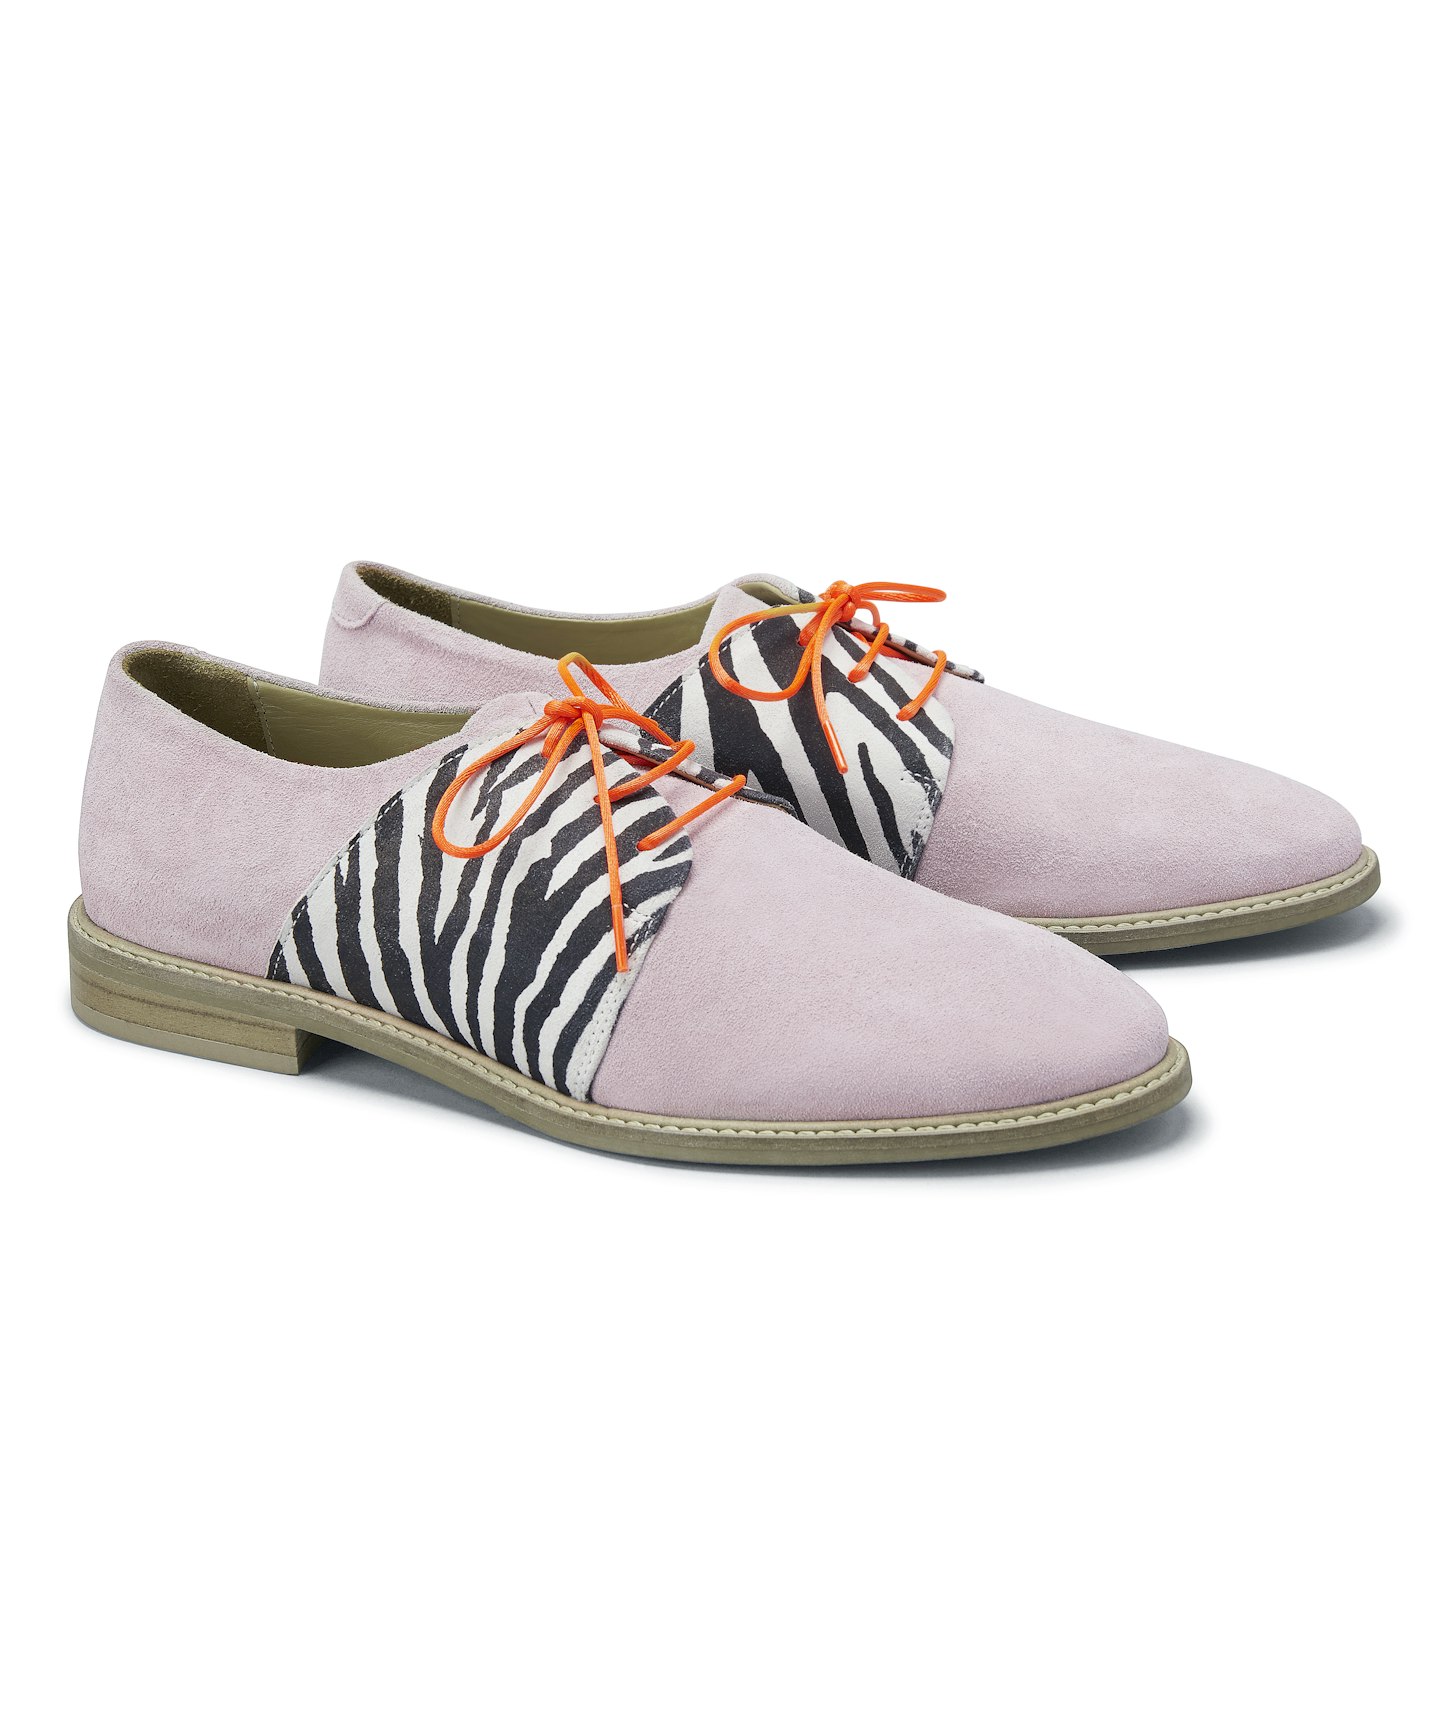 Pastel Violet Shoes, £159